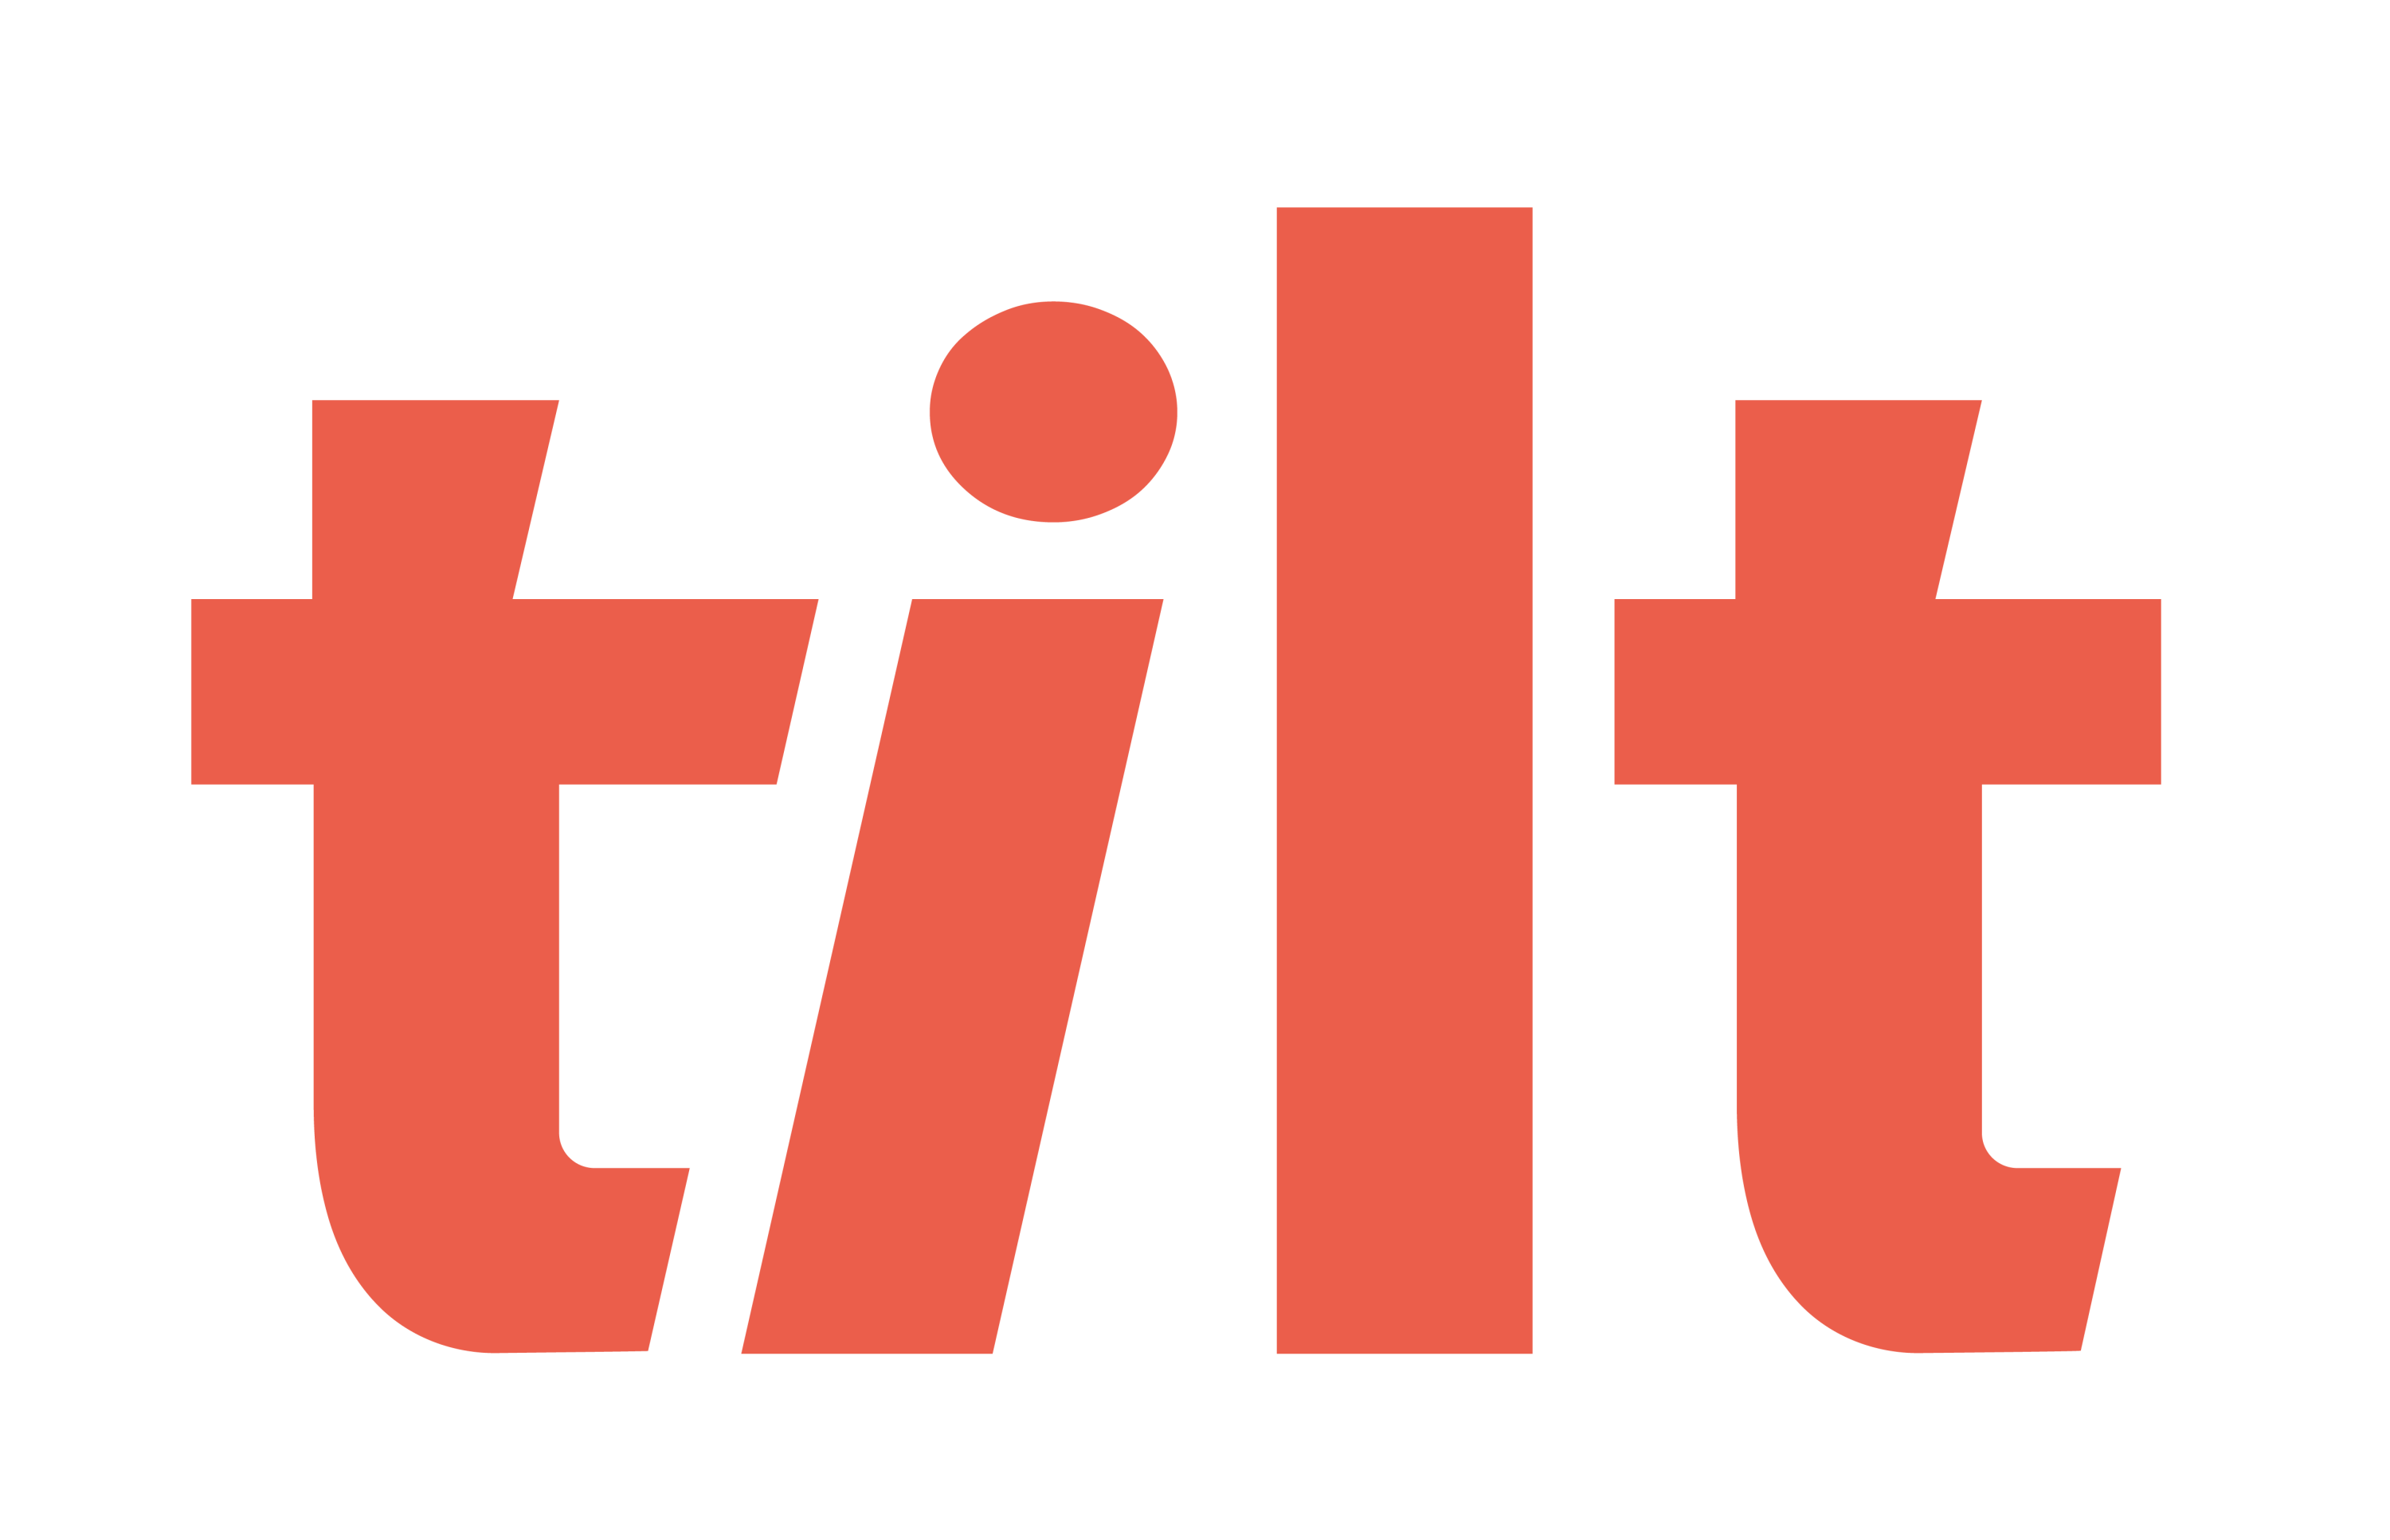 Tilt